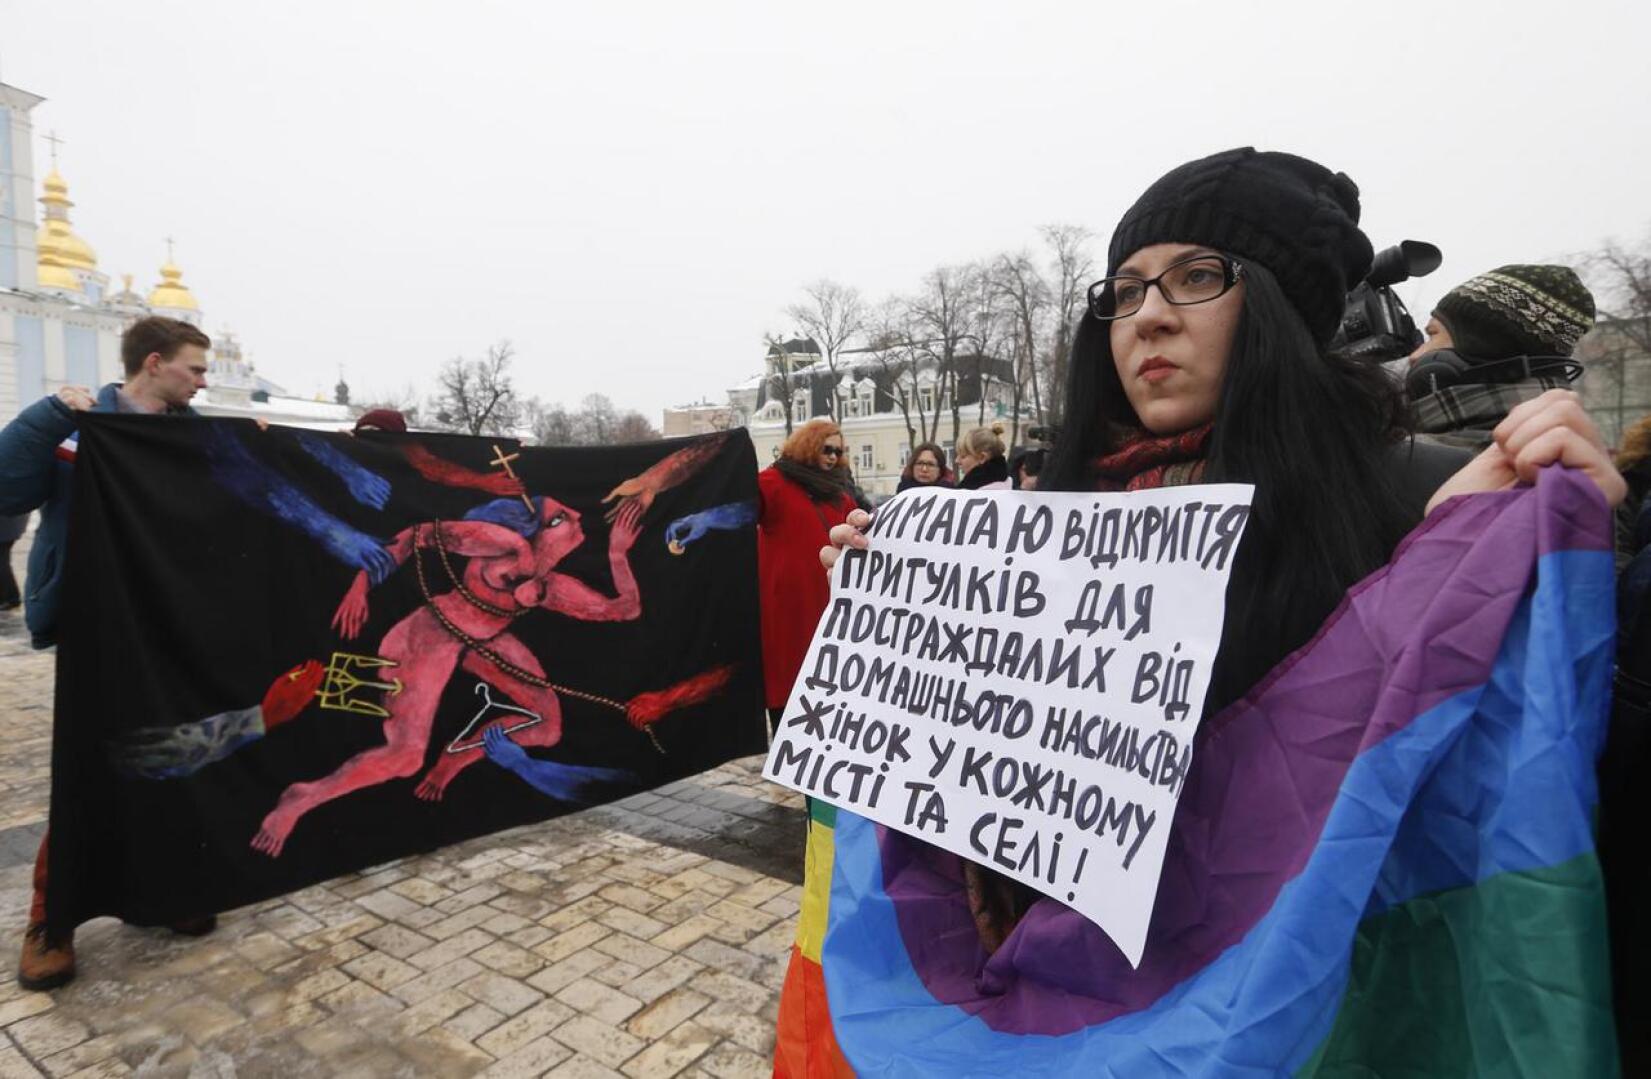 Mielenosoittajat vastustivat perheväkivaltaa Ukrainan Kiovassa viime vuoden naistenpäivänä.